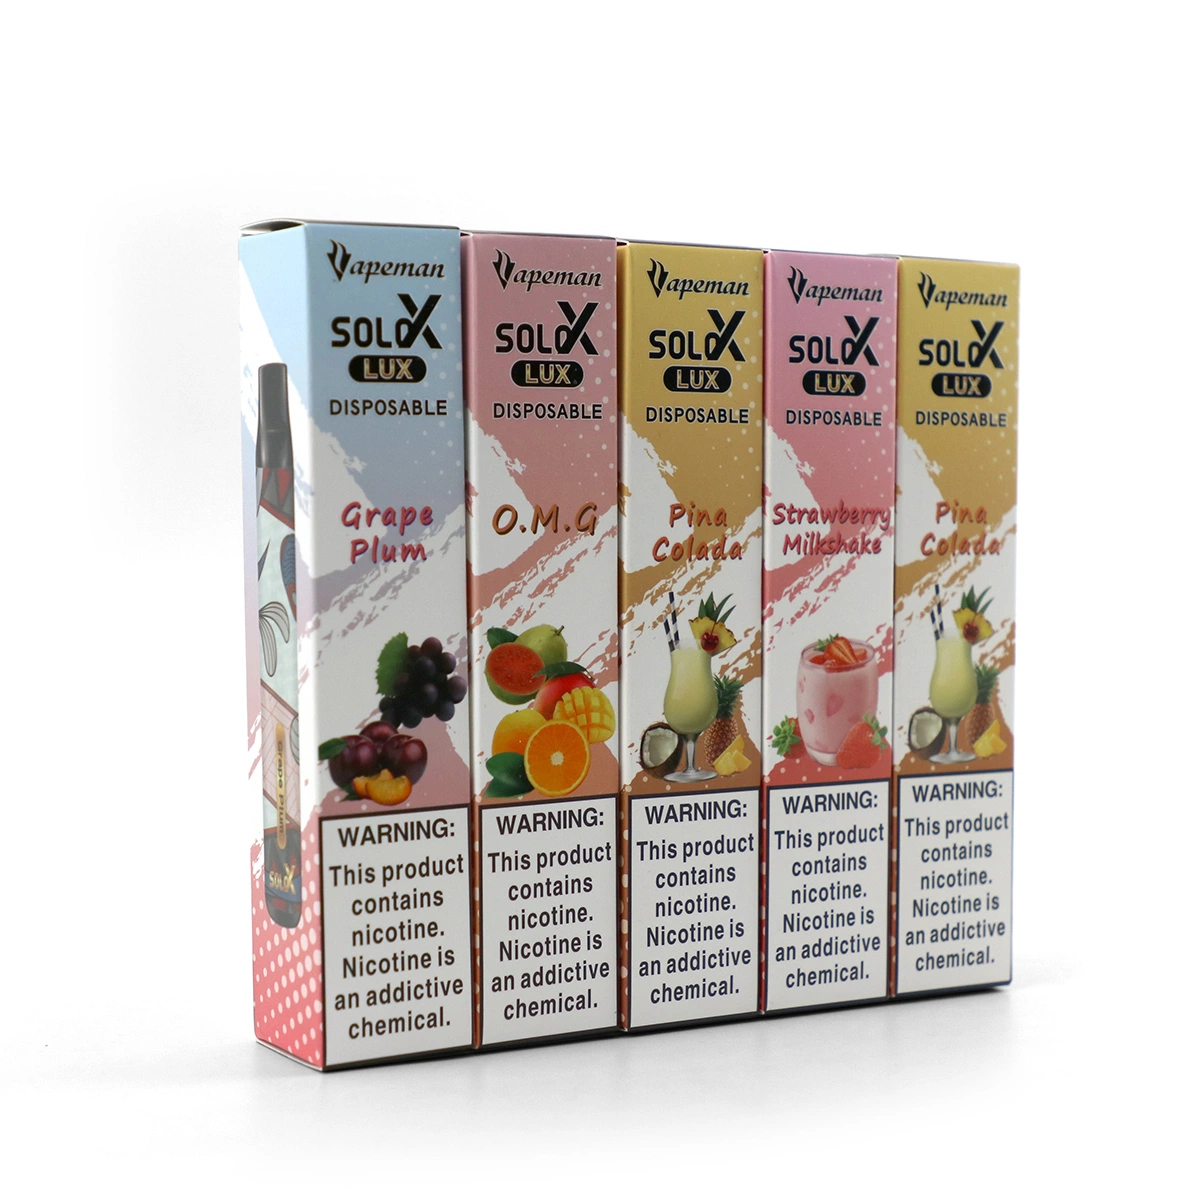 High-Quality Best Flavor Again Vapeman Solo X Dtl Disposable Pod Vape Pen Best Sale in UAE 10 Fruit Flavors